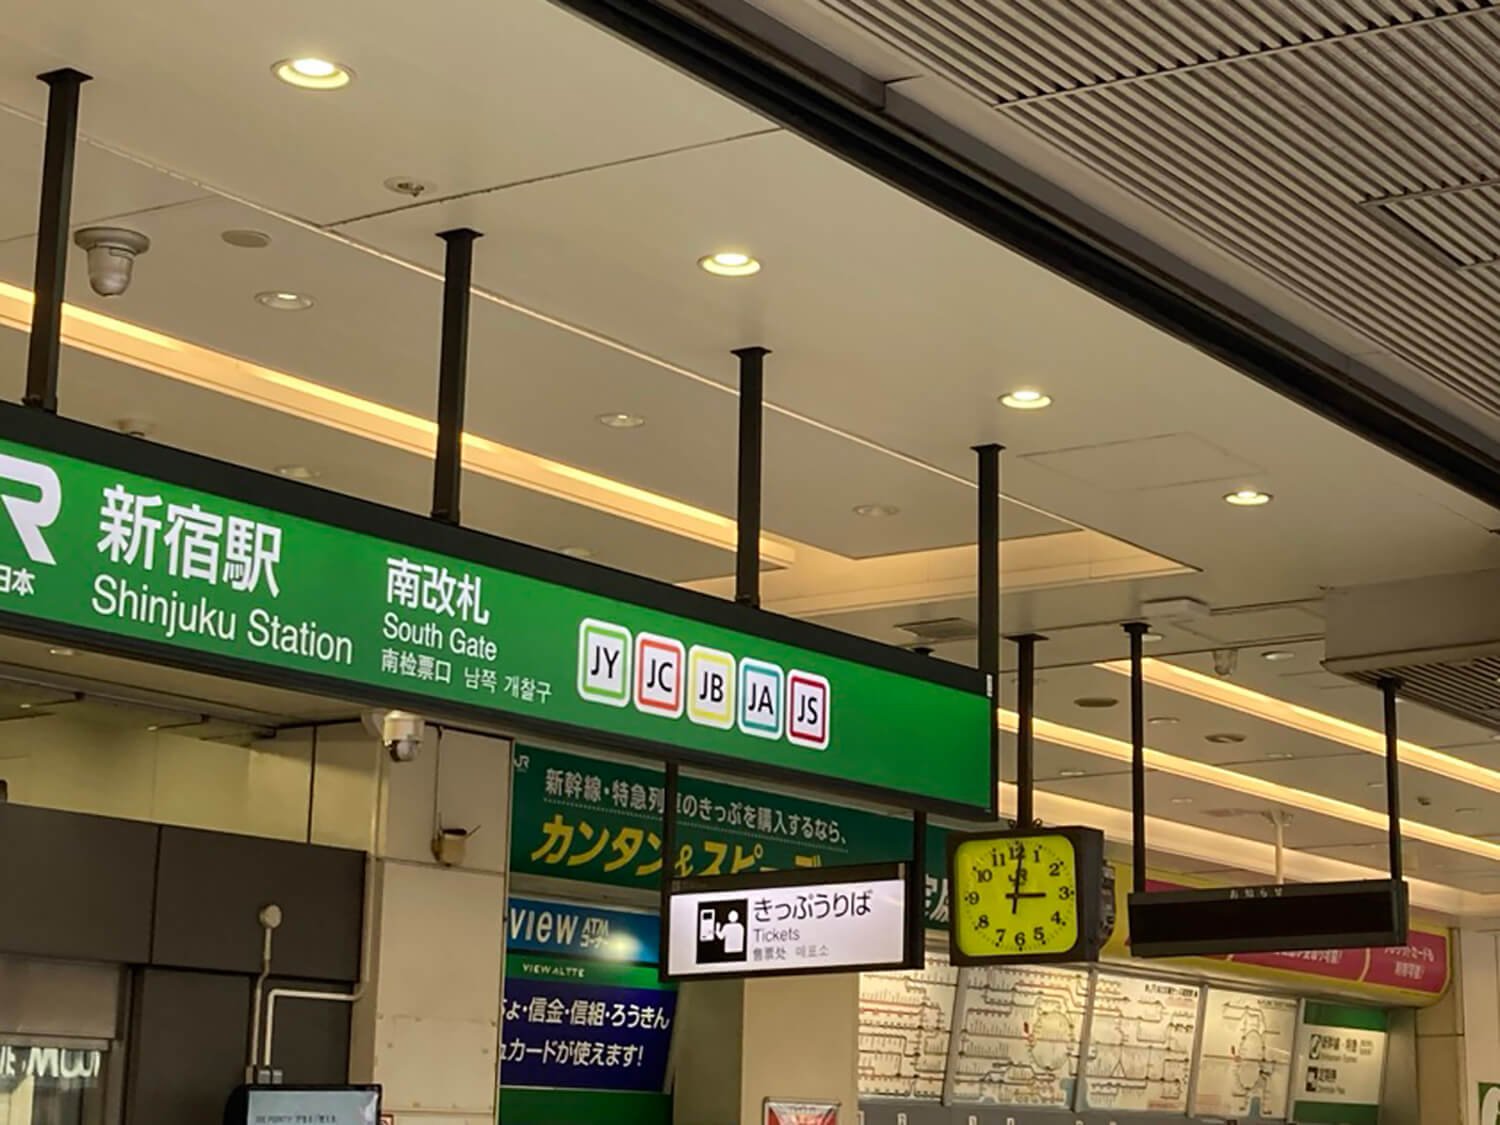 甲州街道に面したJR新宿駅南口の改札にある時計。道路を走っていても目に入りやすい。